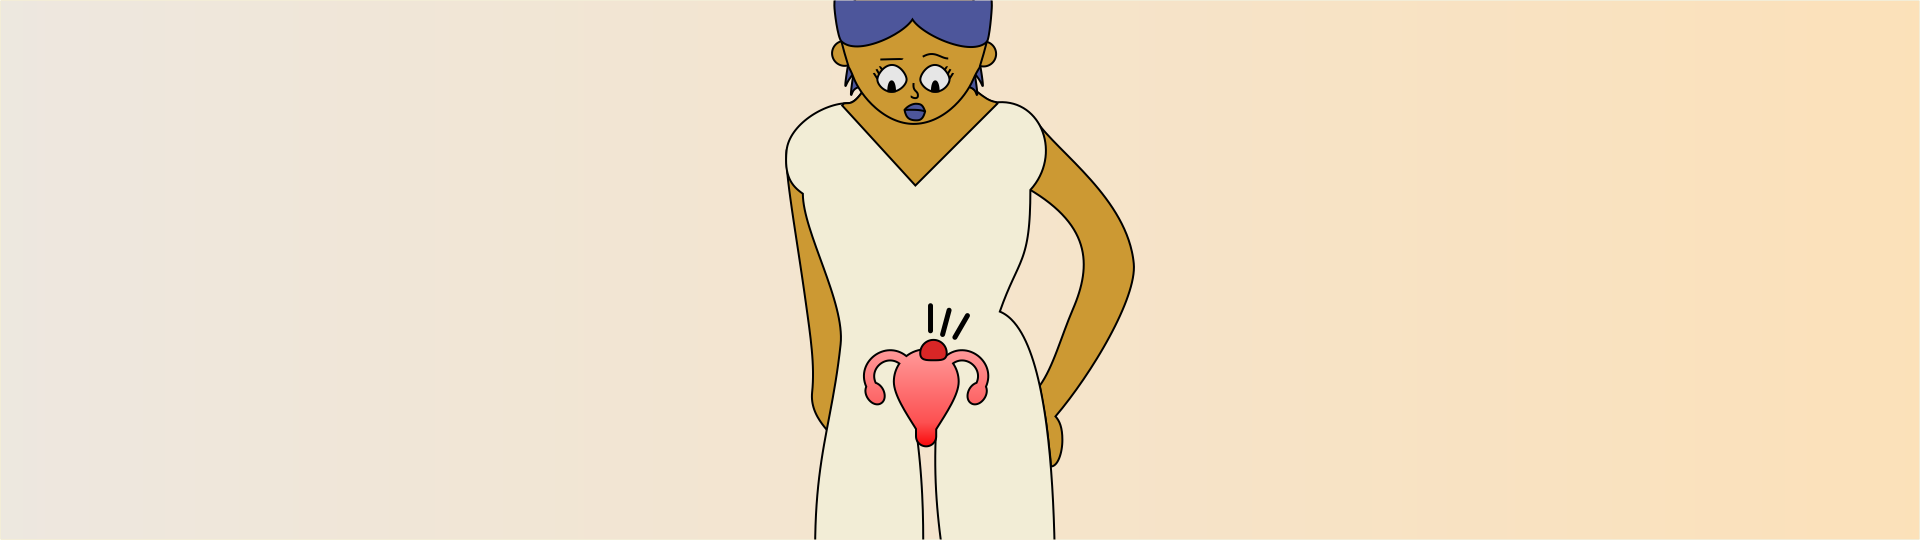 Ilustração de uma pessoa com um mioma no útero.